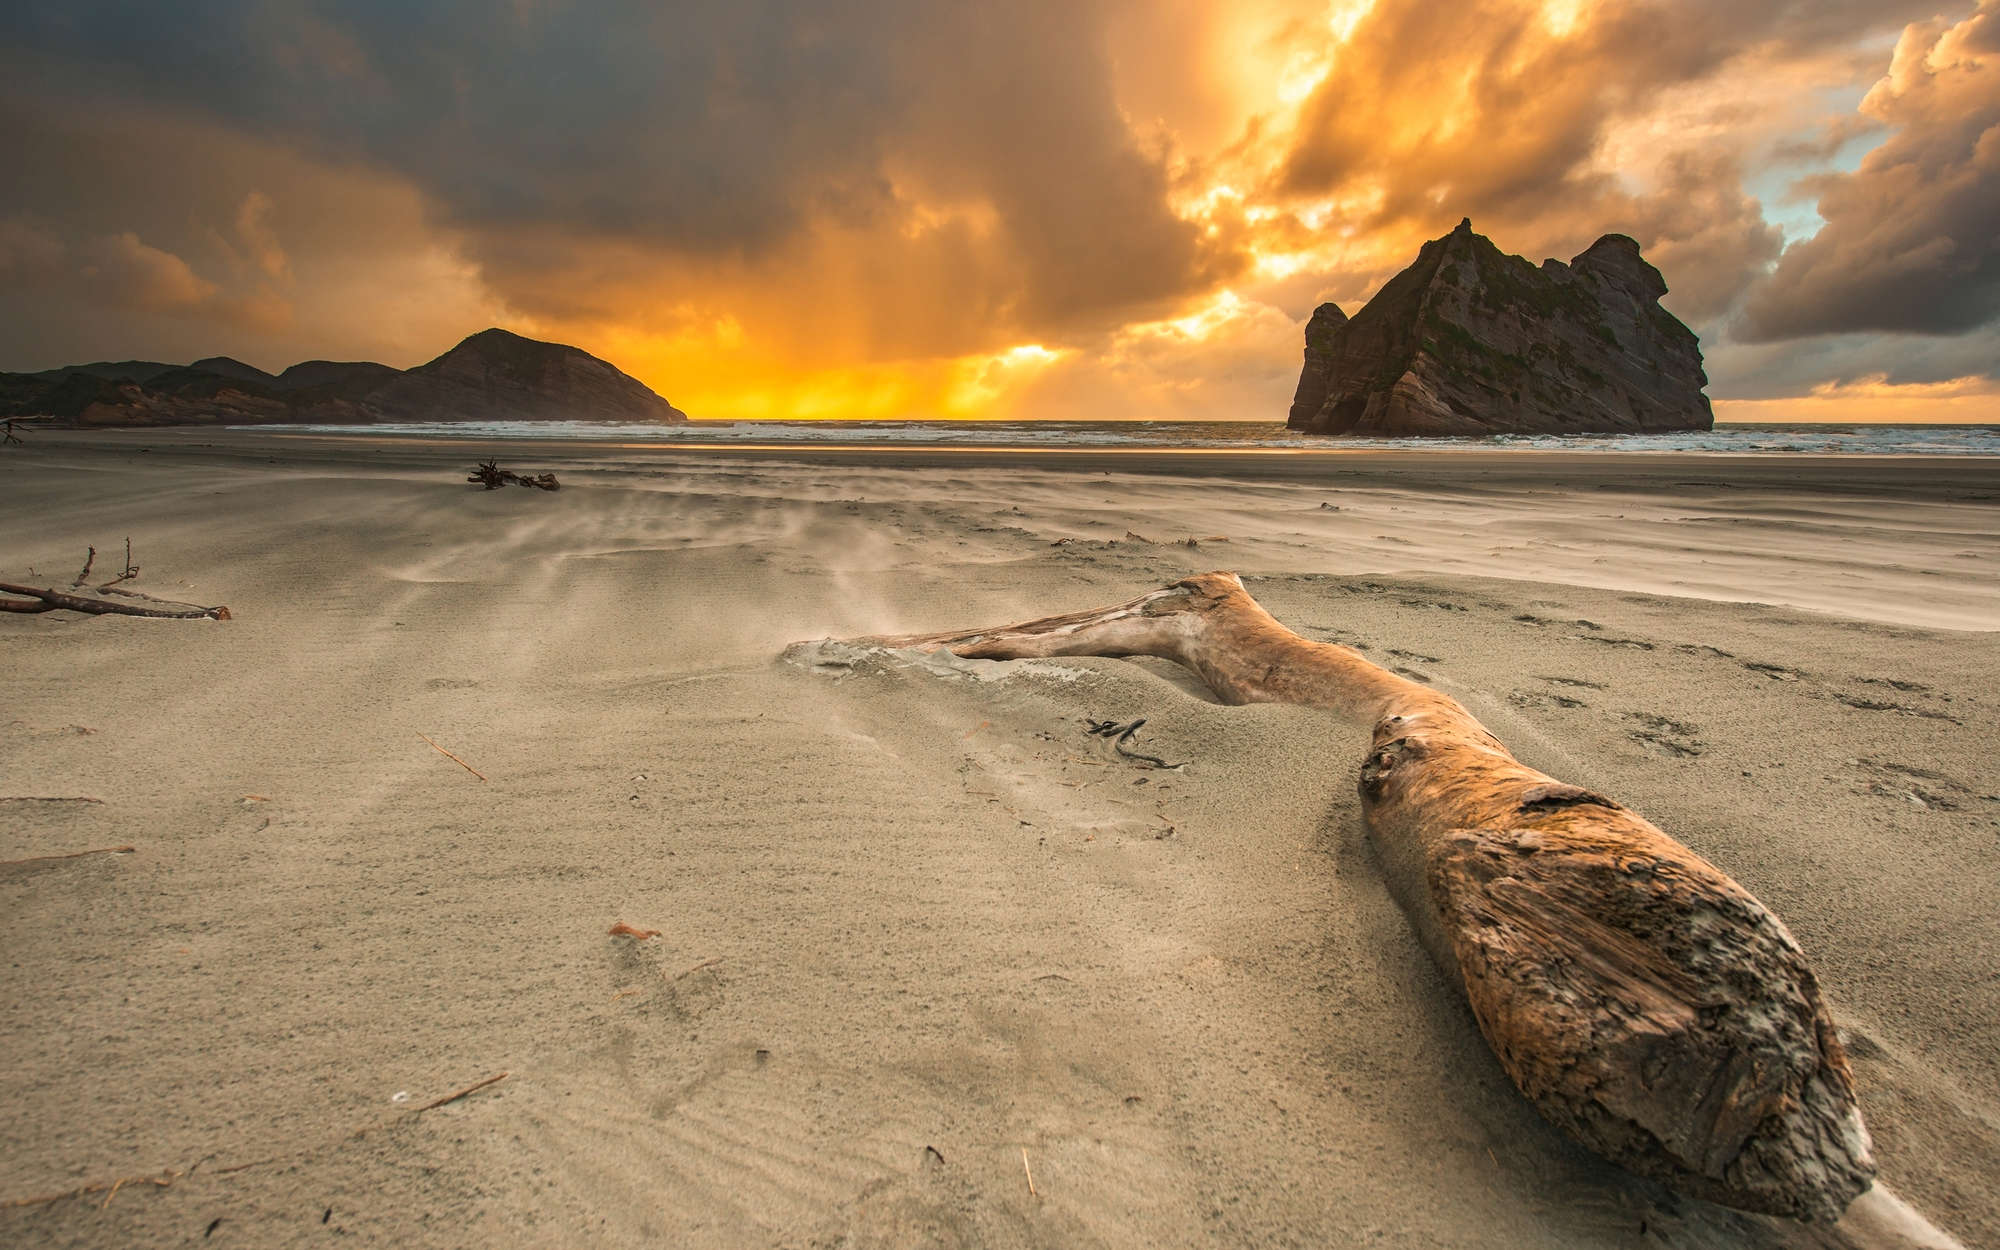             Digital behang Strand in Nieuw-Zeeland - Matglanzend vlies
        